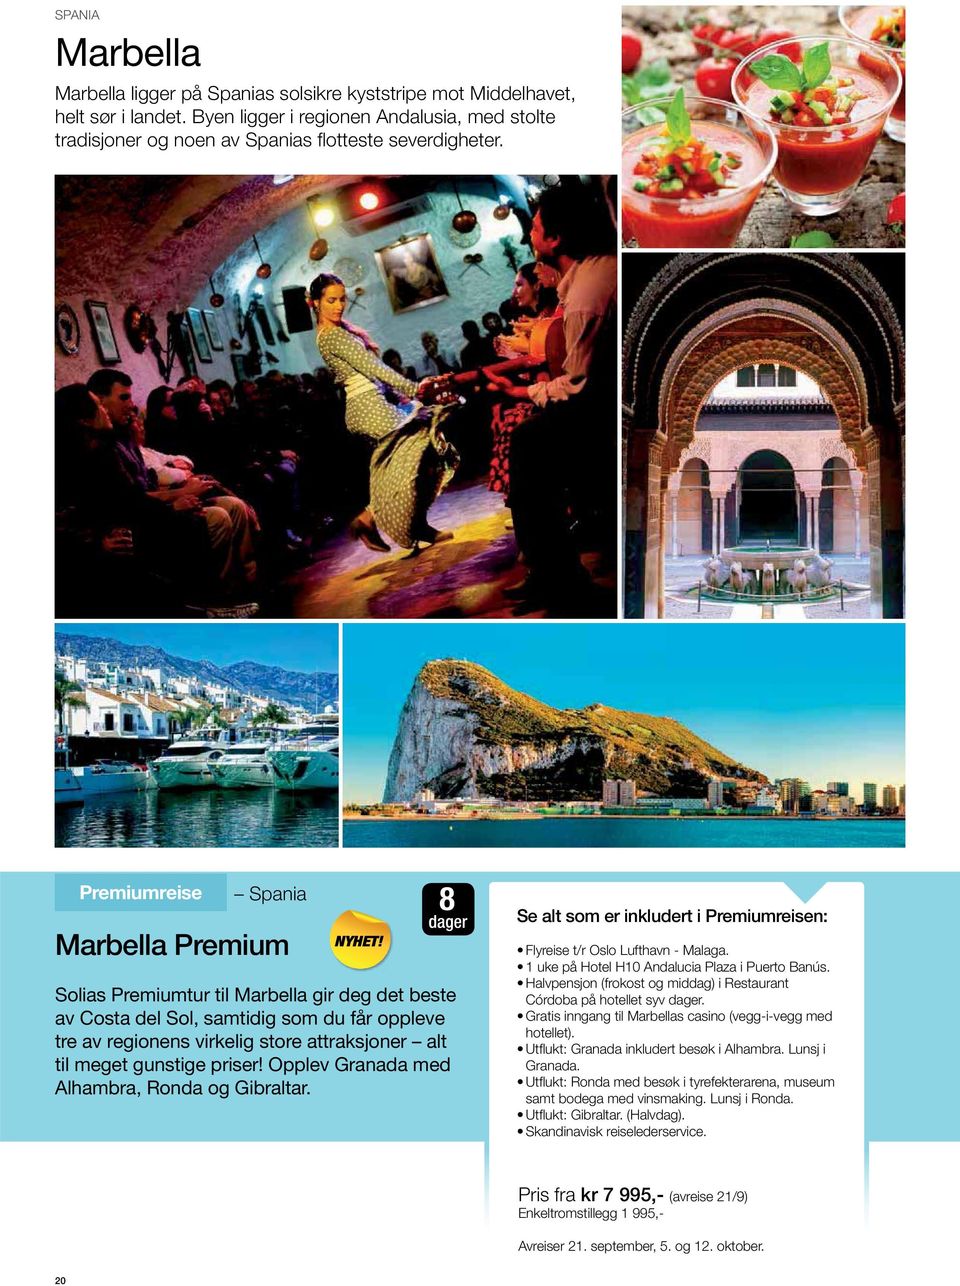 8 dager Solias Premiumtur til Marbella gir deg det beste av Costa del Sol, samtidig som du får oppleve tre av regionens virkelig store attraksjoner alt til meget gunstige priser!